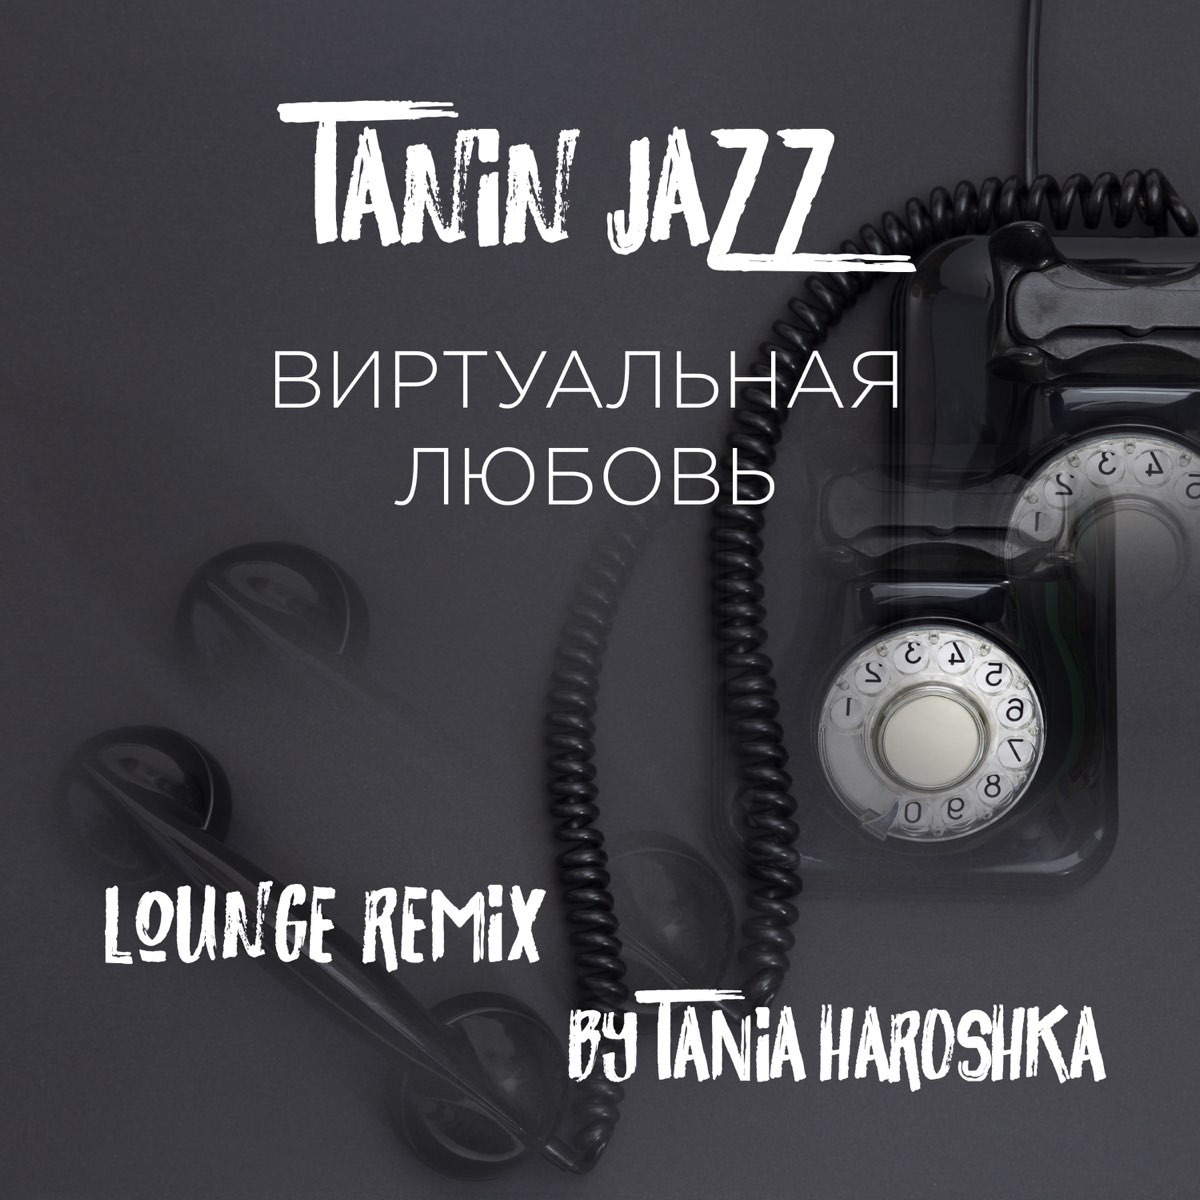 Tanin jazz песни. Виртуальная любовь Tanin Jazz. Виртуальная любовь Tanin Jazz Remix. Tanin Jazz фото. Виртуальная любовь песня ремикс.